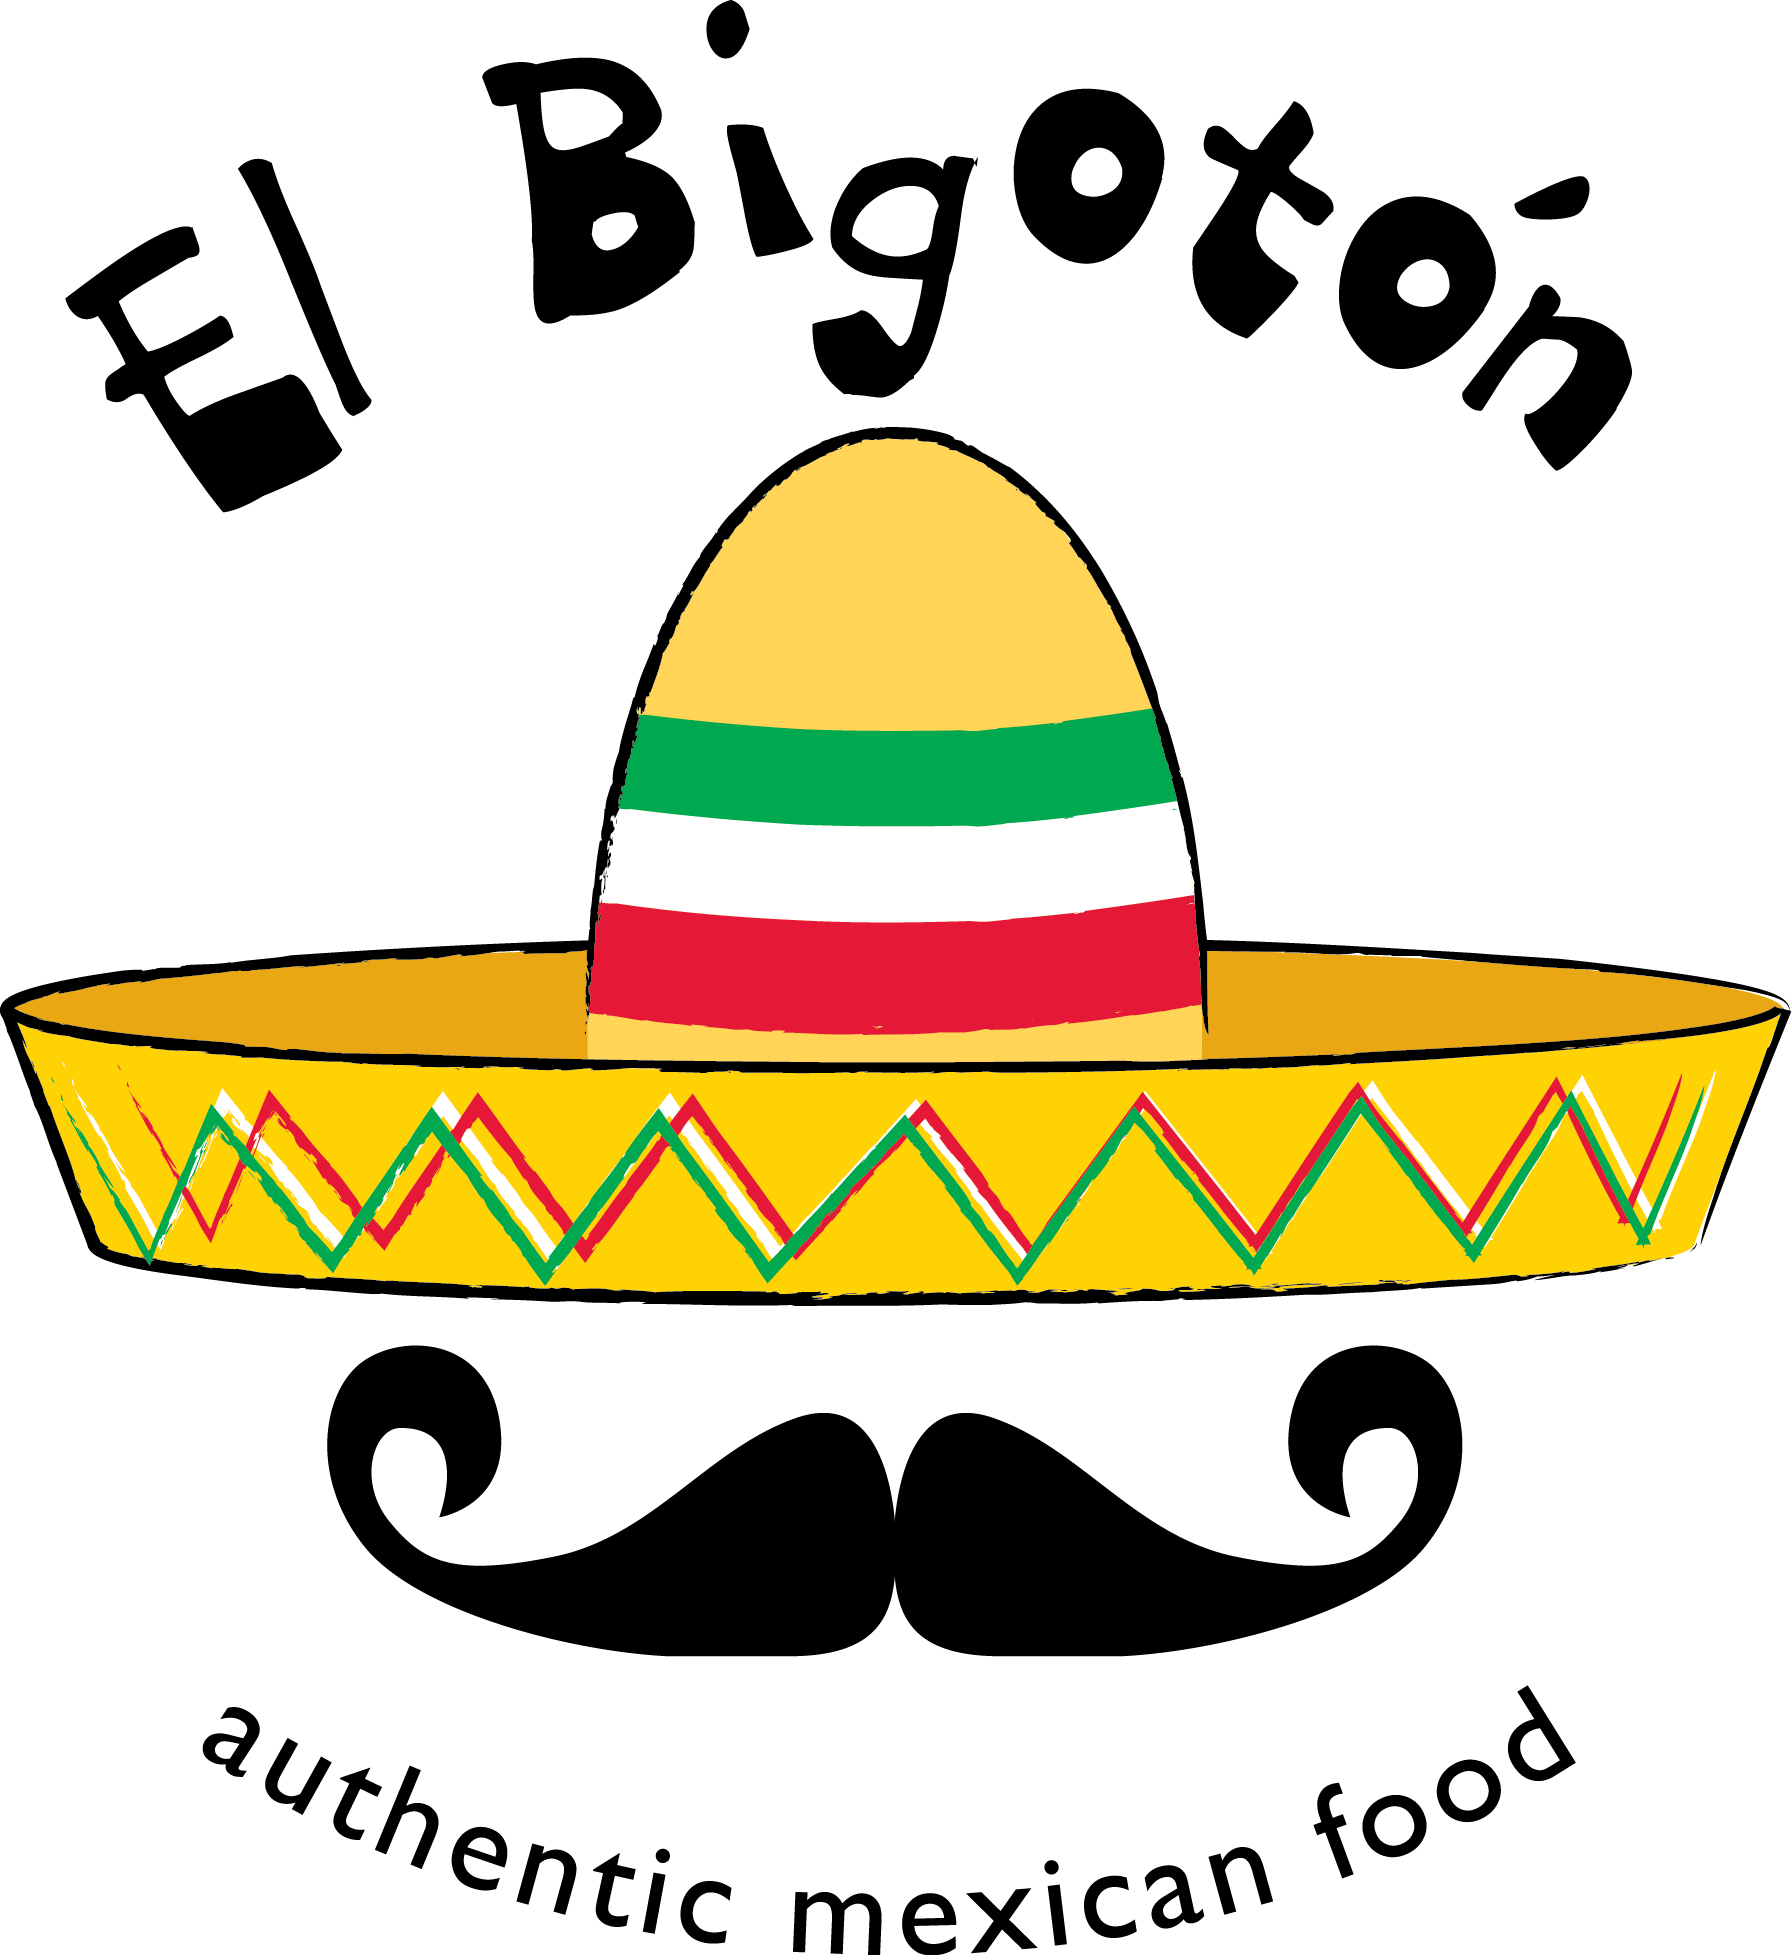 Bienvenido A El Bigoton Welcome To El Bigoton Authentic - Mexican Cuisine (1791x1955)